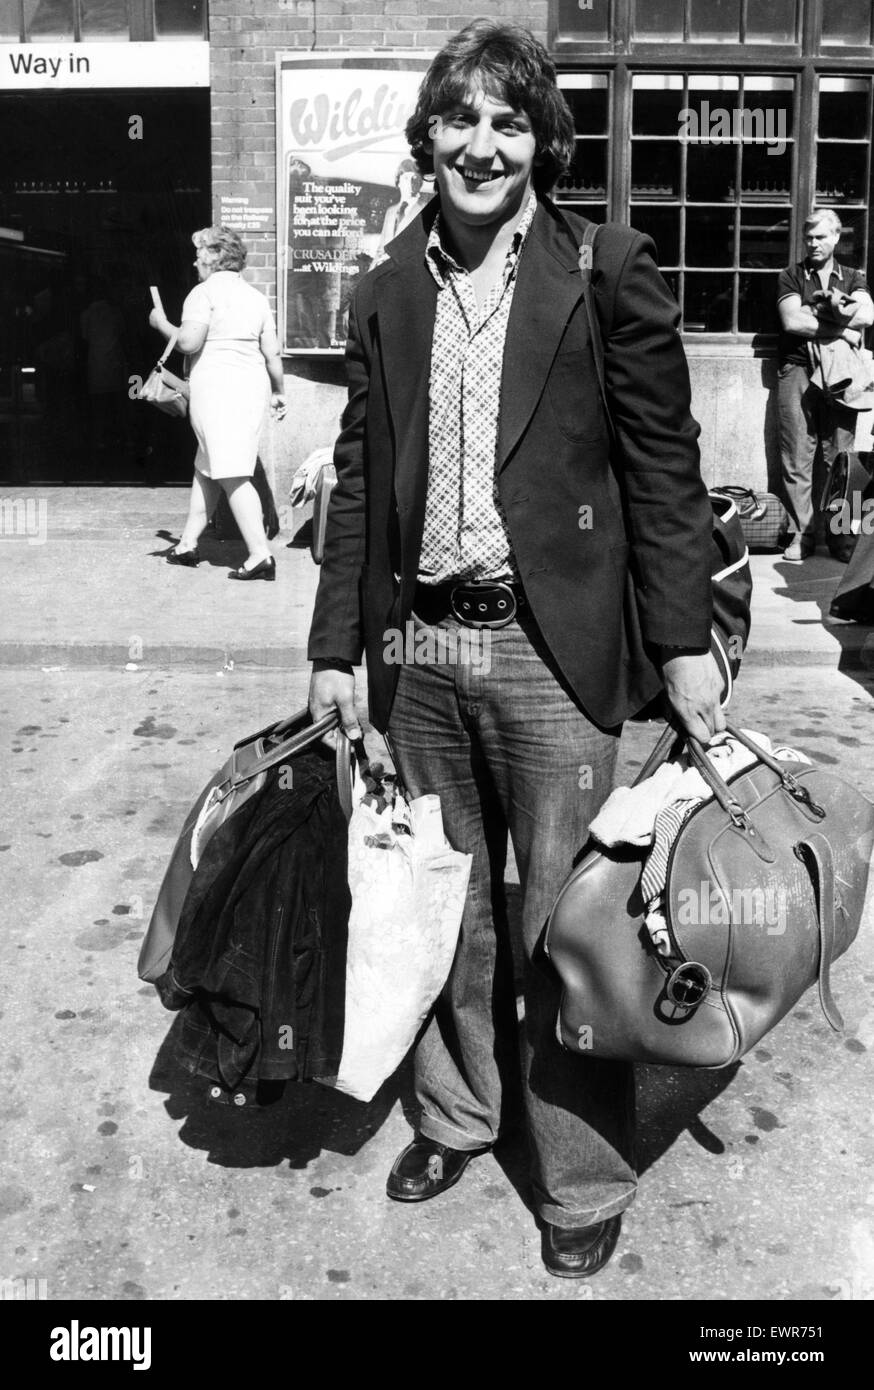 Lewis Alun deviendra le 18e Joueur gallois dans les Lions Britanniques lorsqu'il arrive à Auckland. Lewis, de London Welsh, remplace le demi de mêlée Brynmor Williams. Août 1977. Banque D'Images